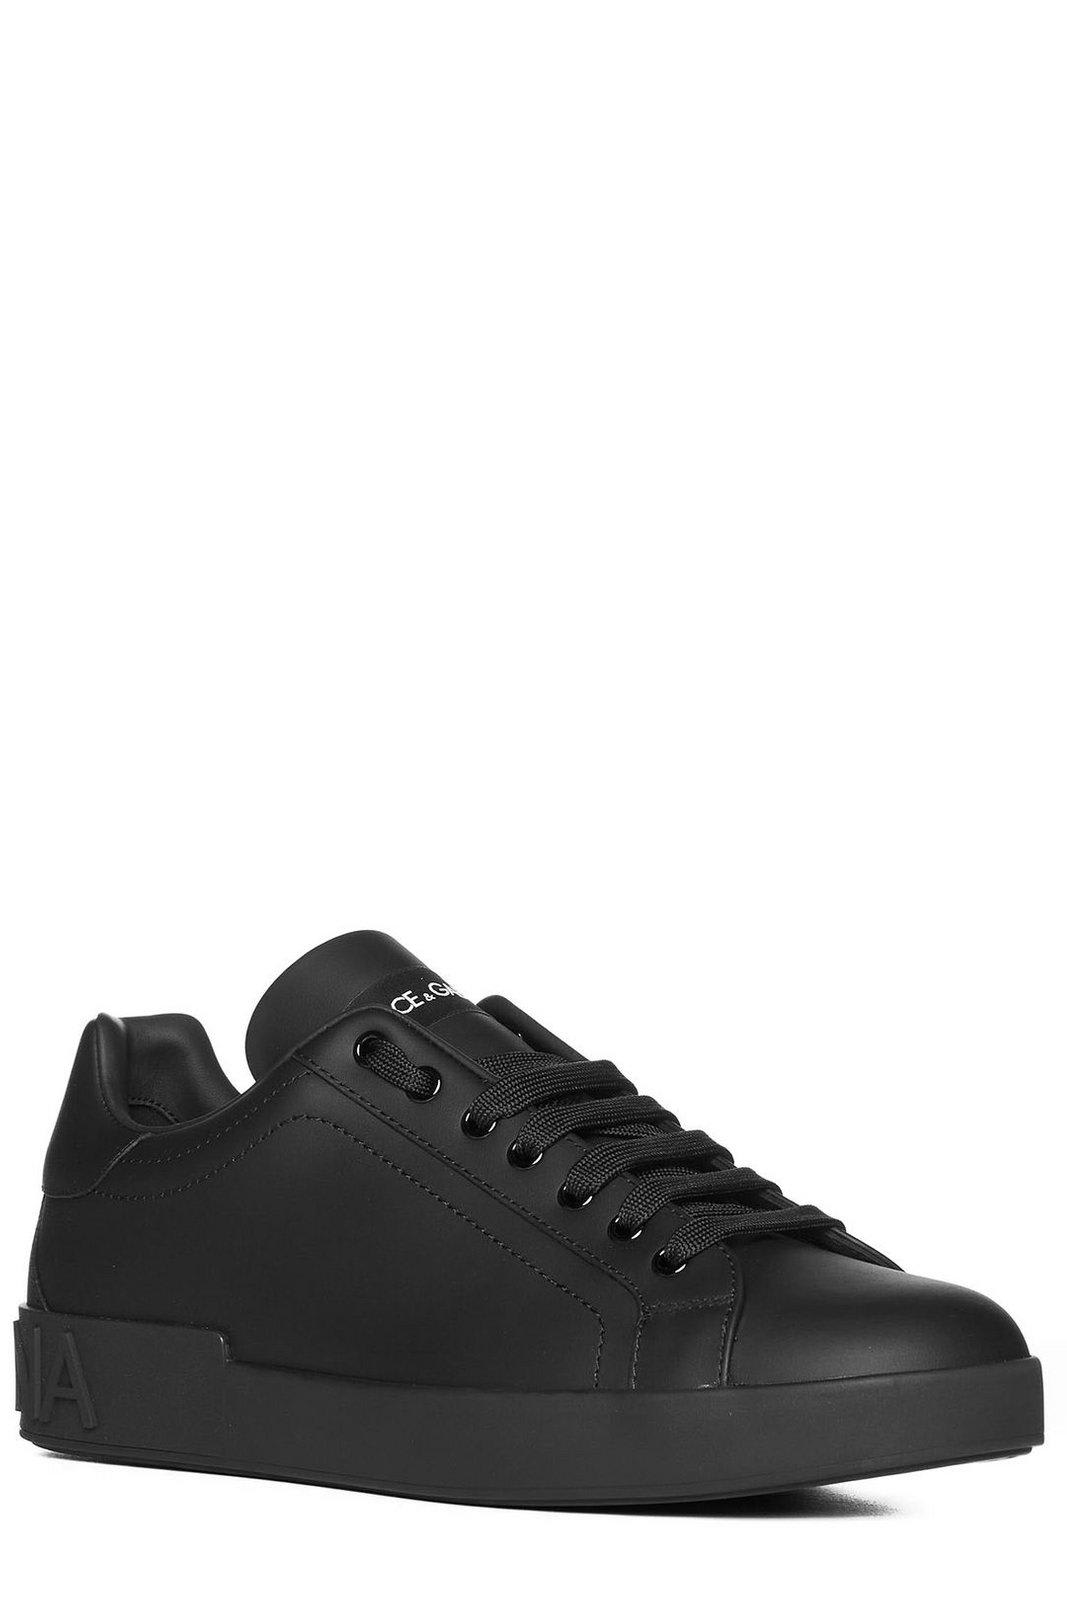 Shop Dolce & Gabbana Portofino Lace-up Sneakers In Black